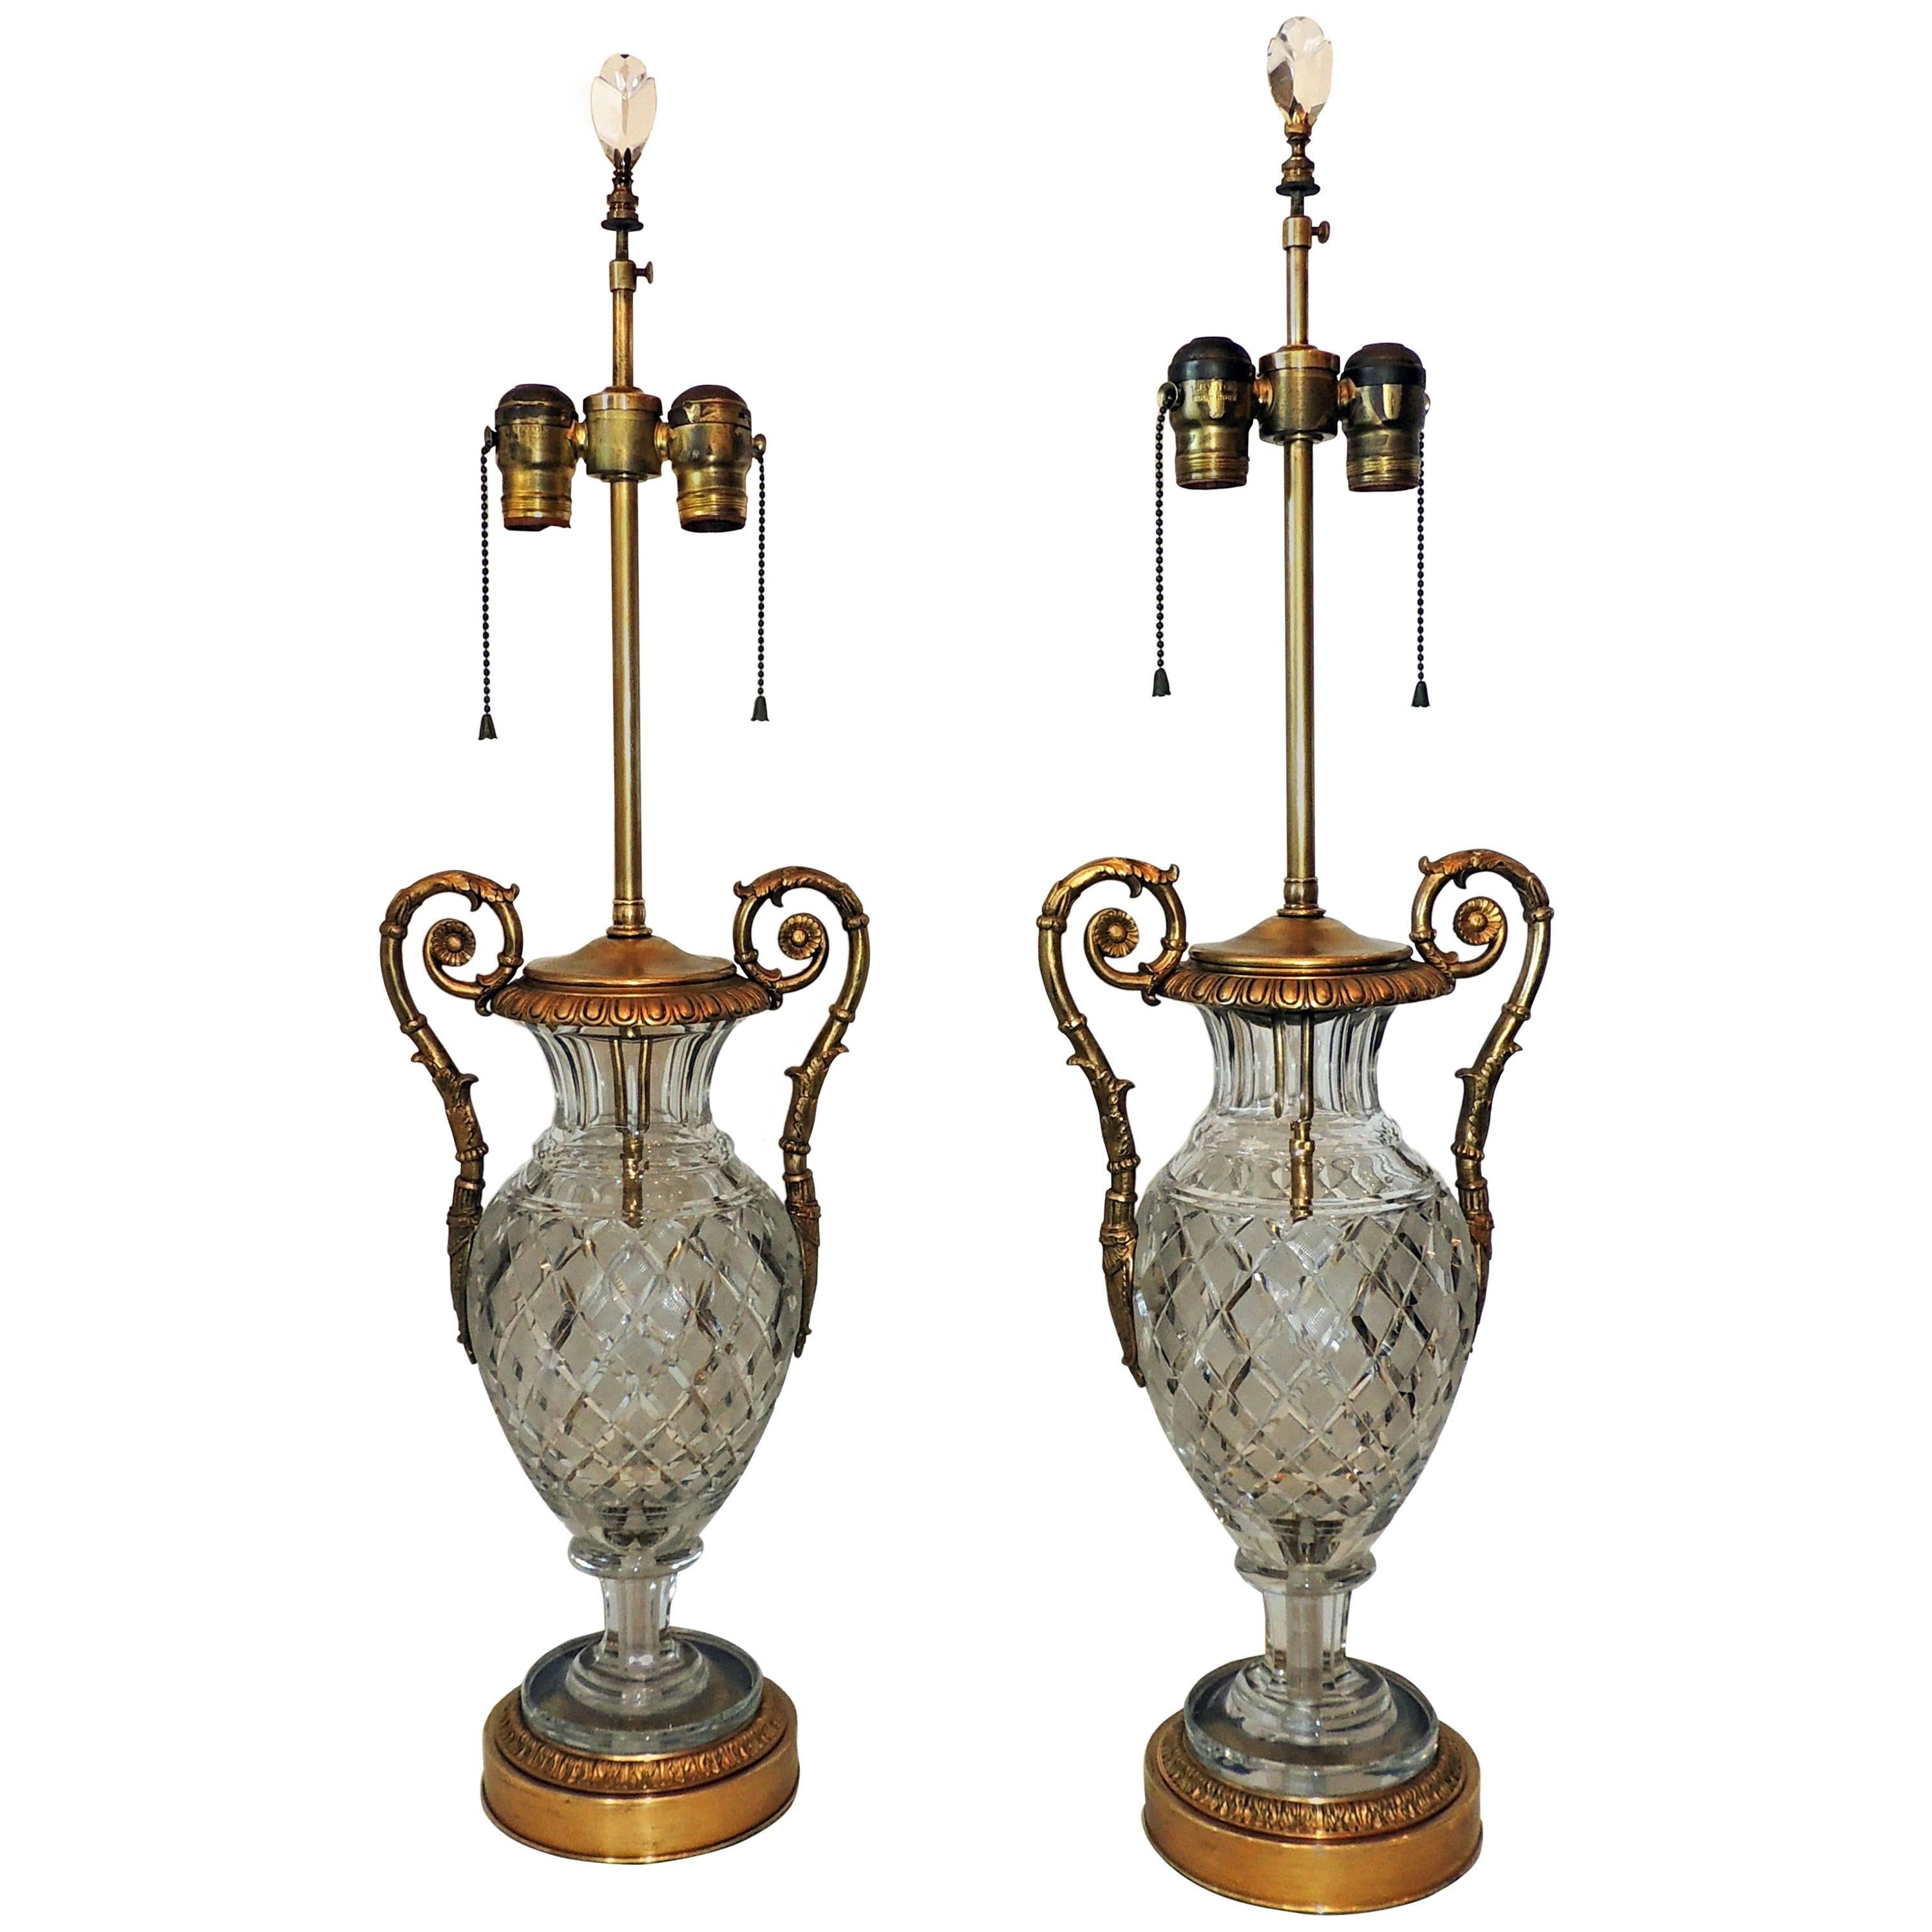 Magnifique paire de lampes néoclassiques françaises en cristal taillé et bronze doré montées sur bronze doré